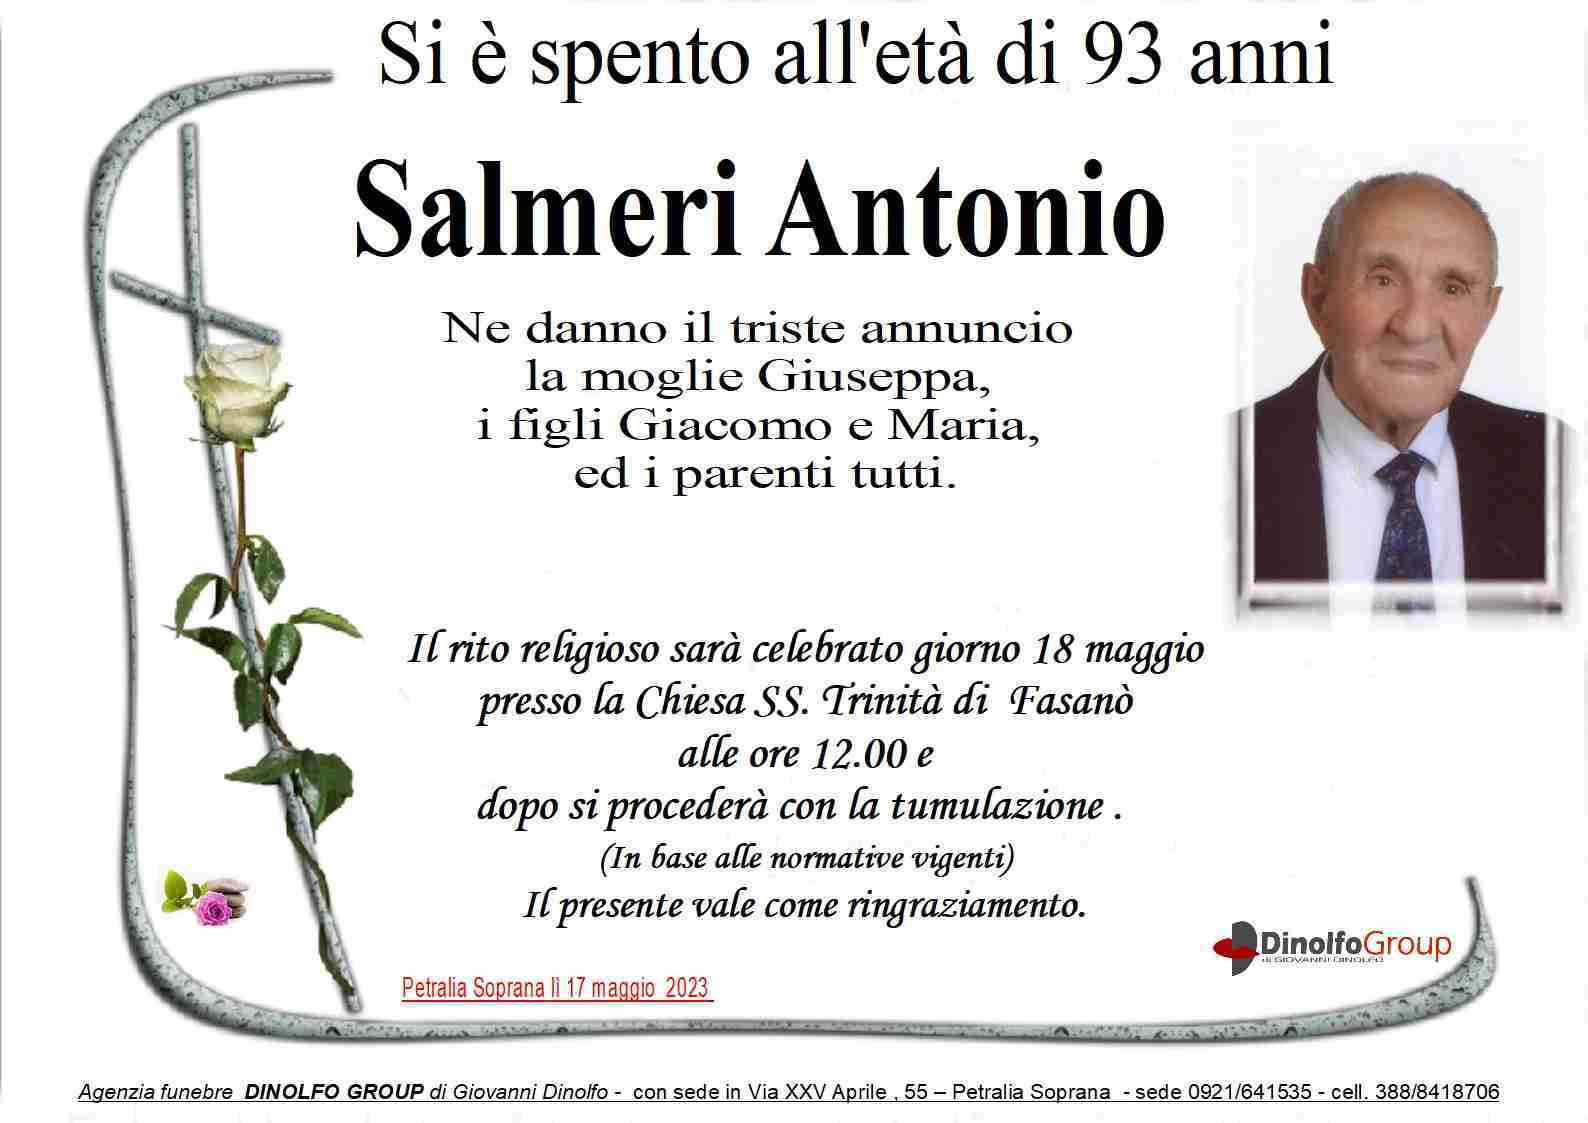 Antonio Salmeri